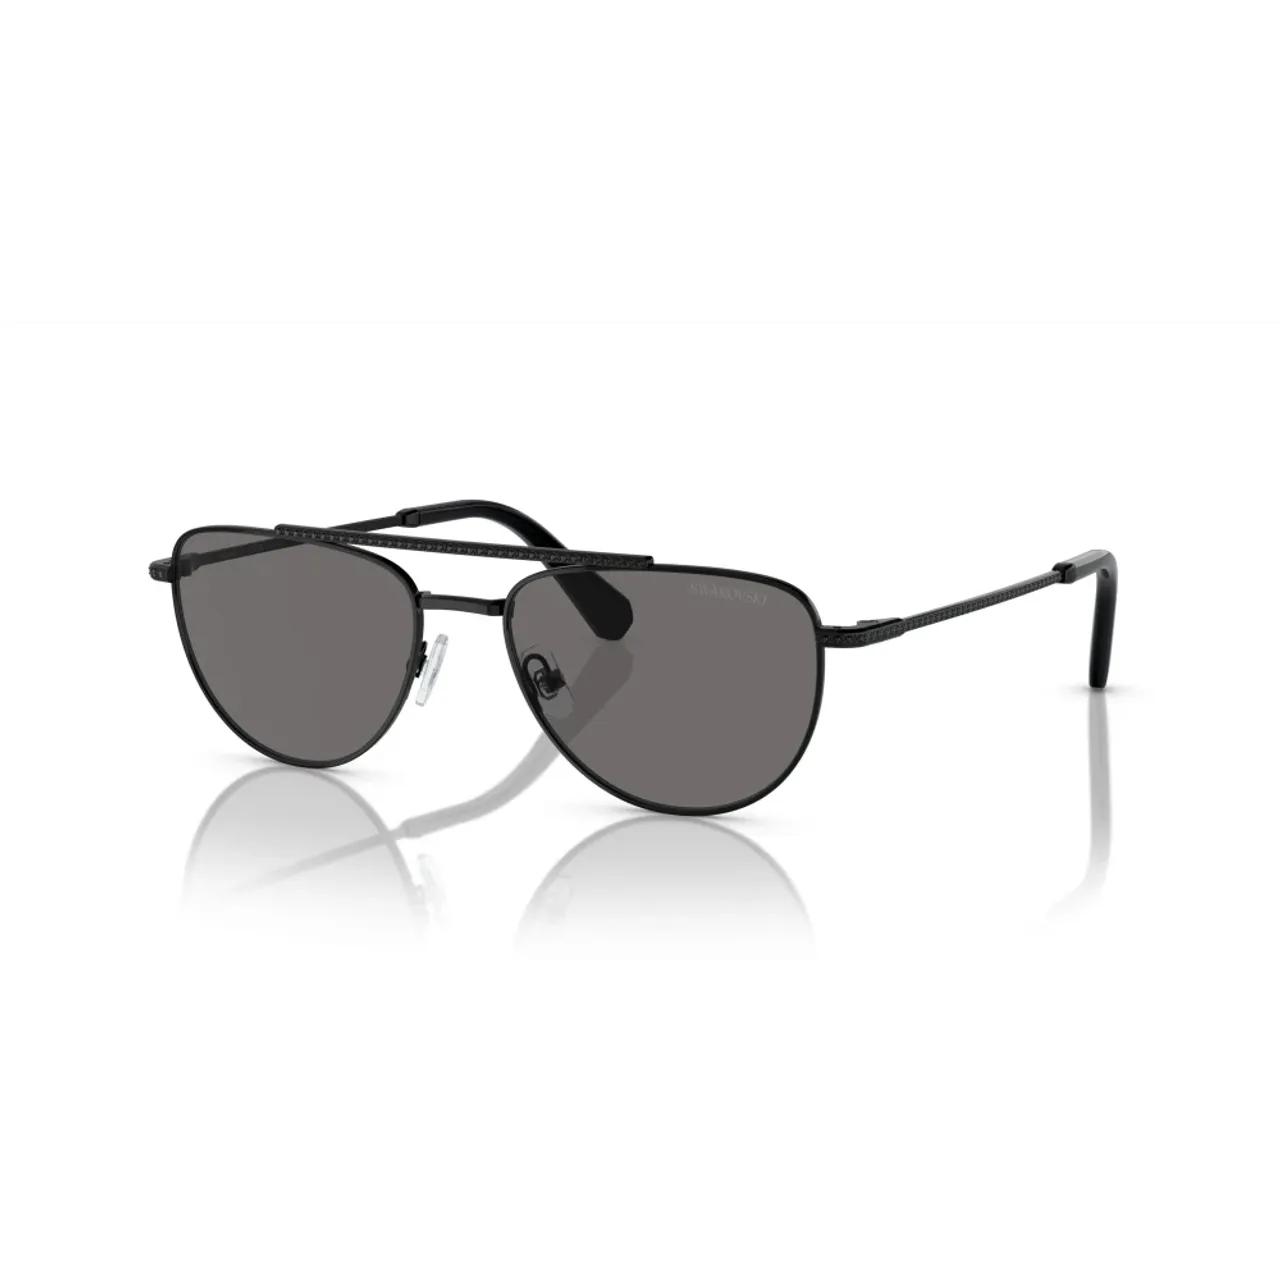 Schwarze/Dunkelgraue Sonnenbrille SK 7007 Swarovski